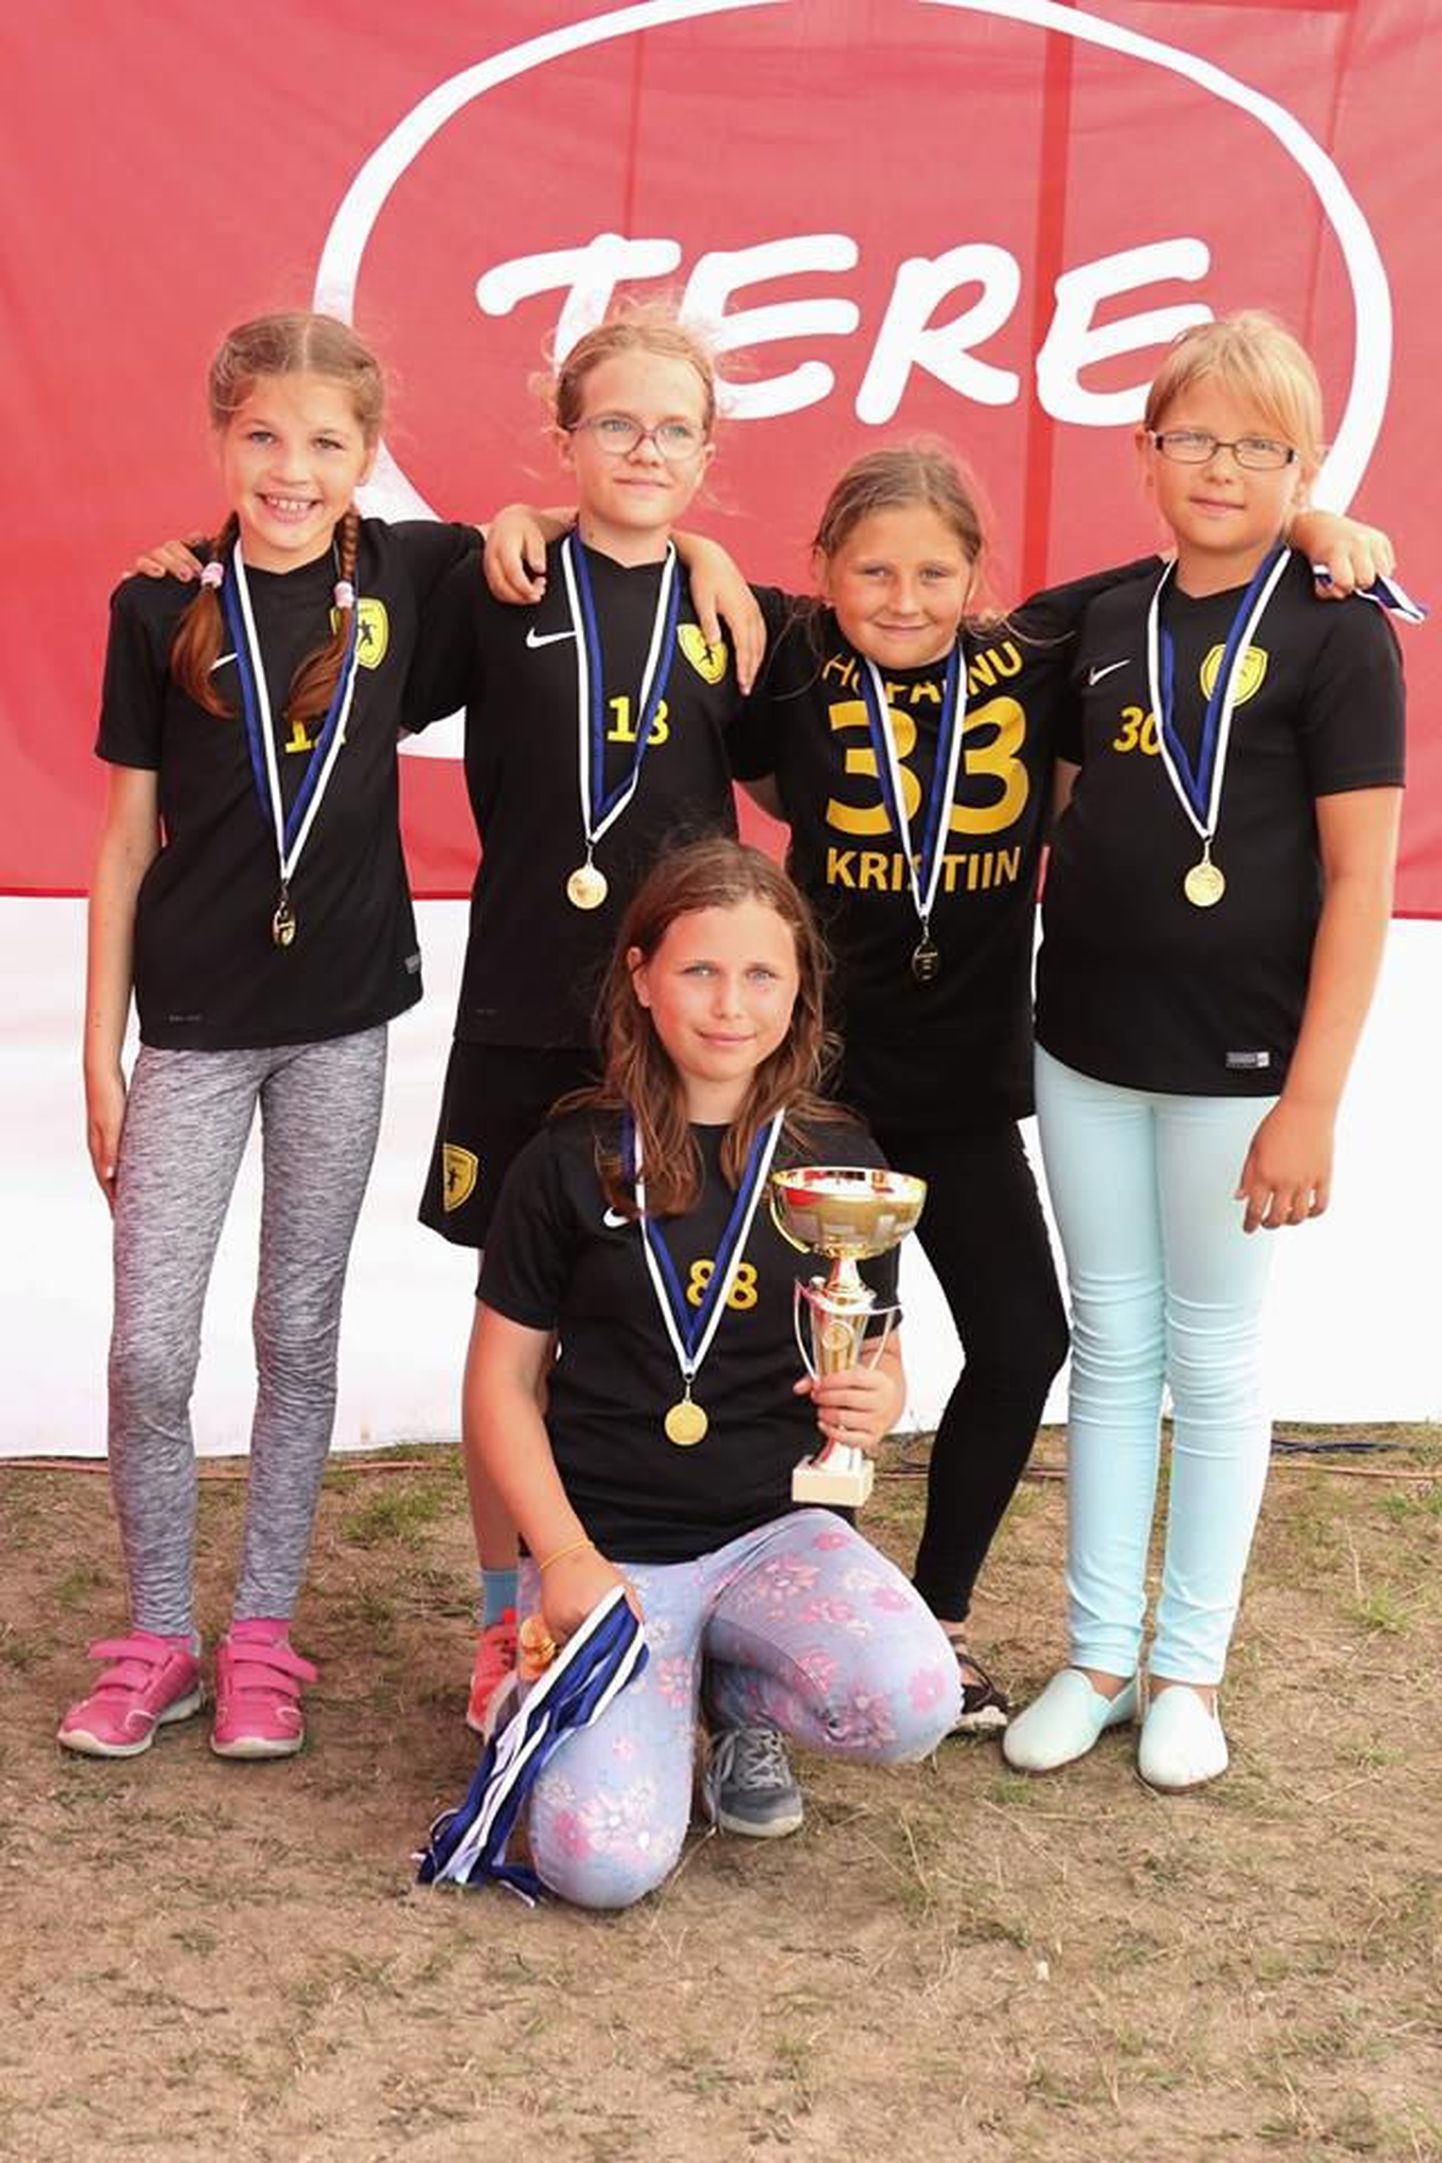 HC Pärnu / Reiu Puhkekeksus tuli 2006. aastal sündinud tüdrukute seas esikohale.